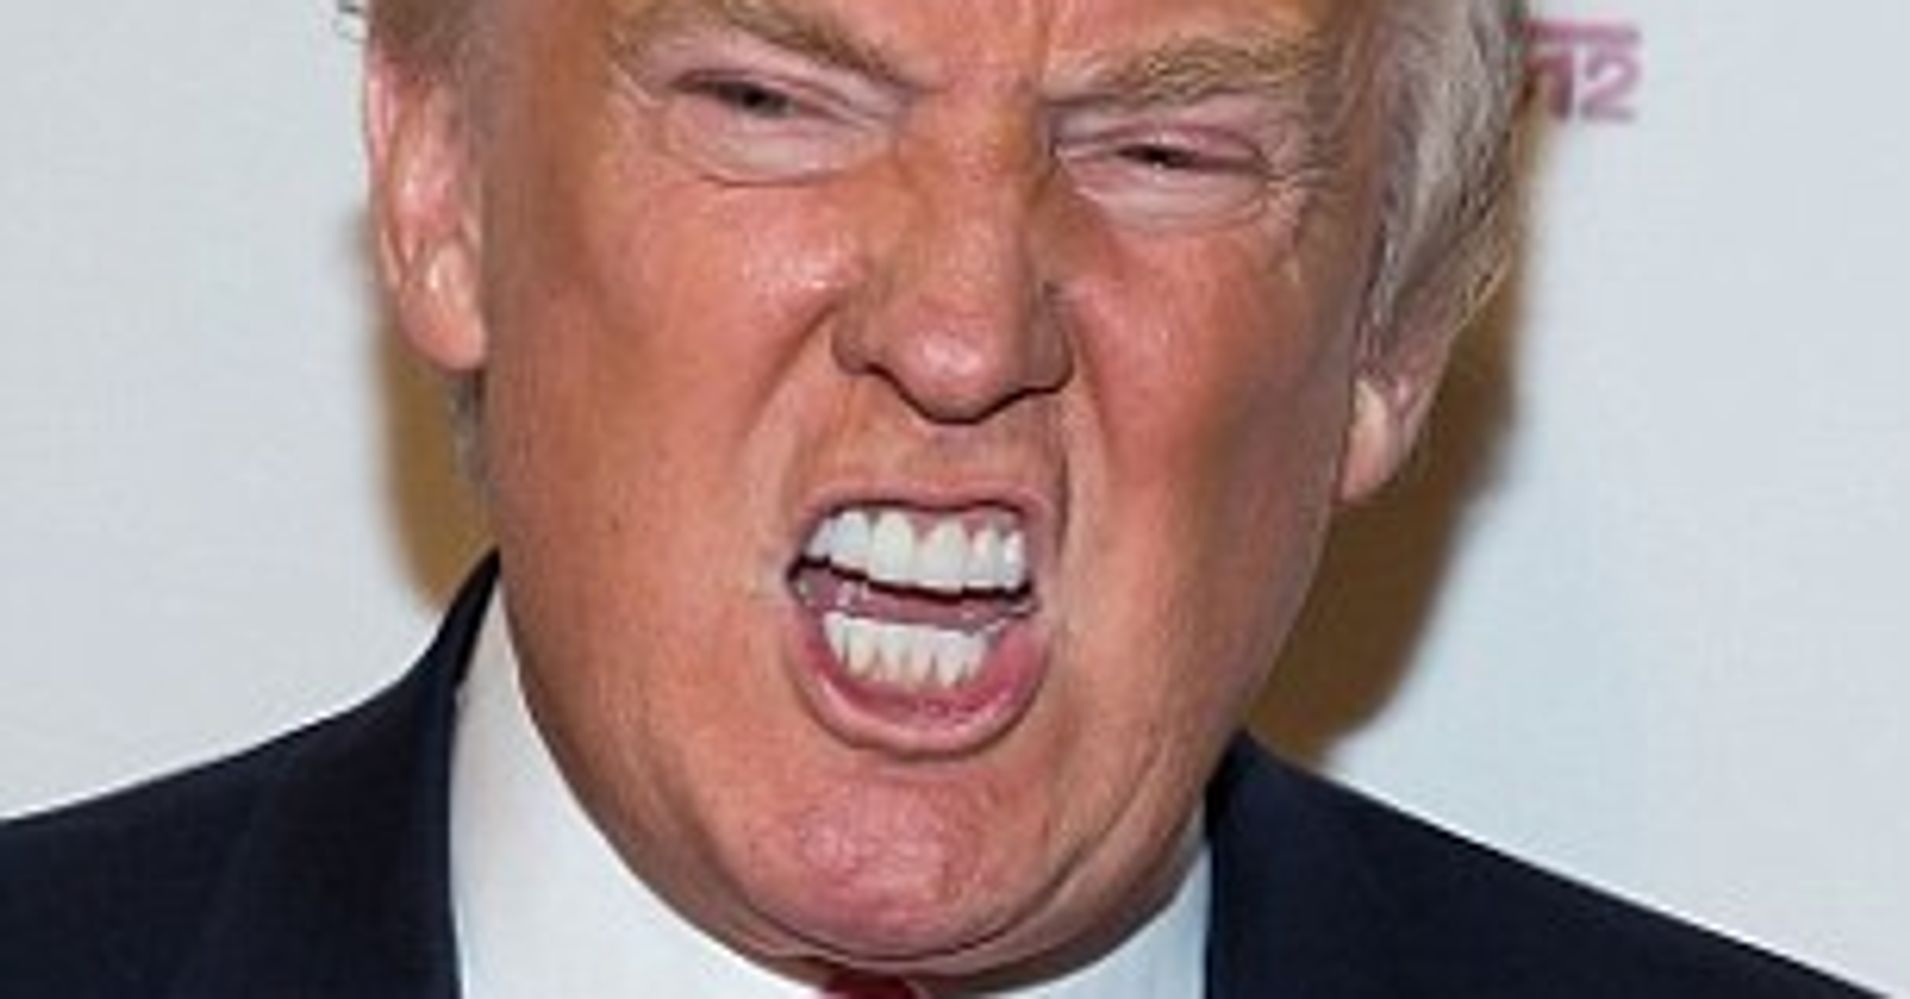 Trump's teeth, nasty snarl Blank Meme Template